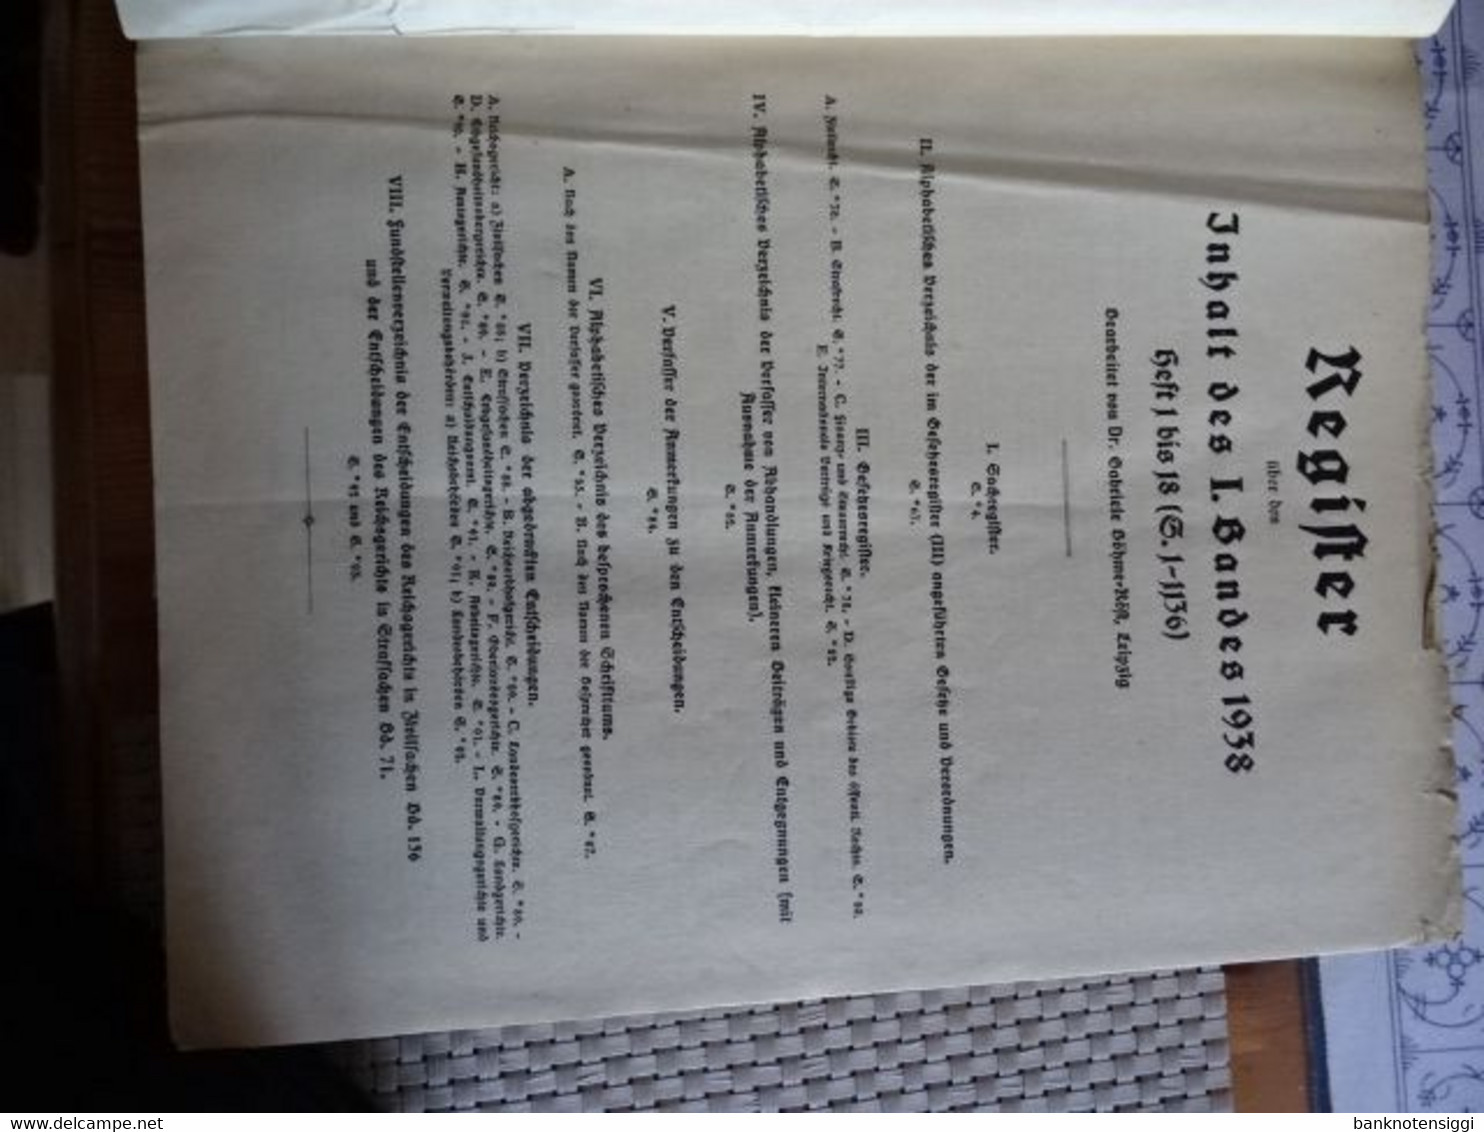 Buch "Juristische Wochenzeitschrift 67 Jahrgang 1938 Band 1 Seite 1-1136 - Rechten